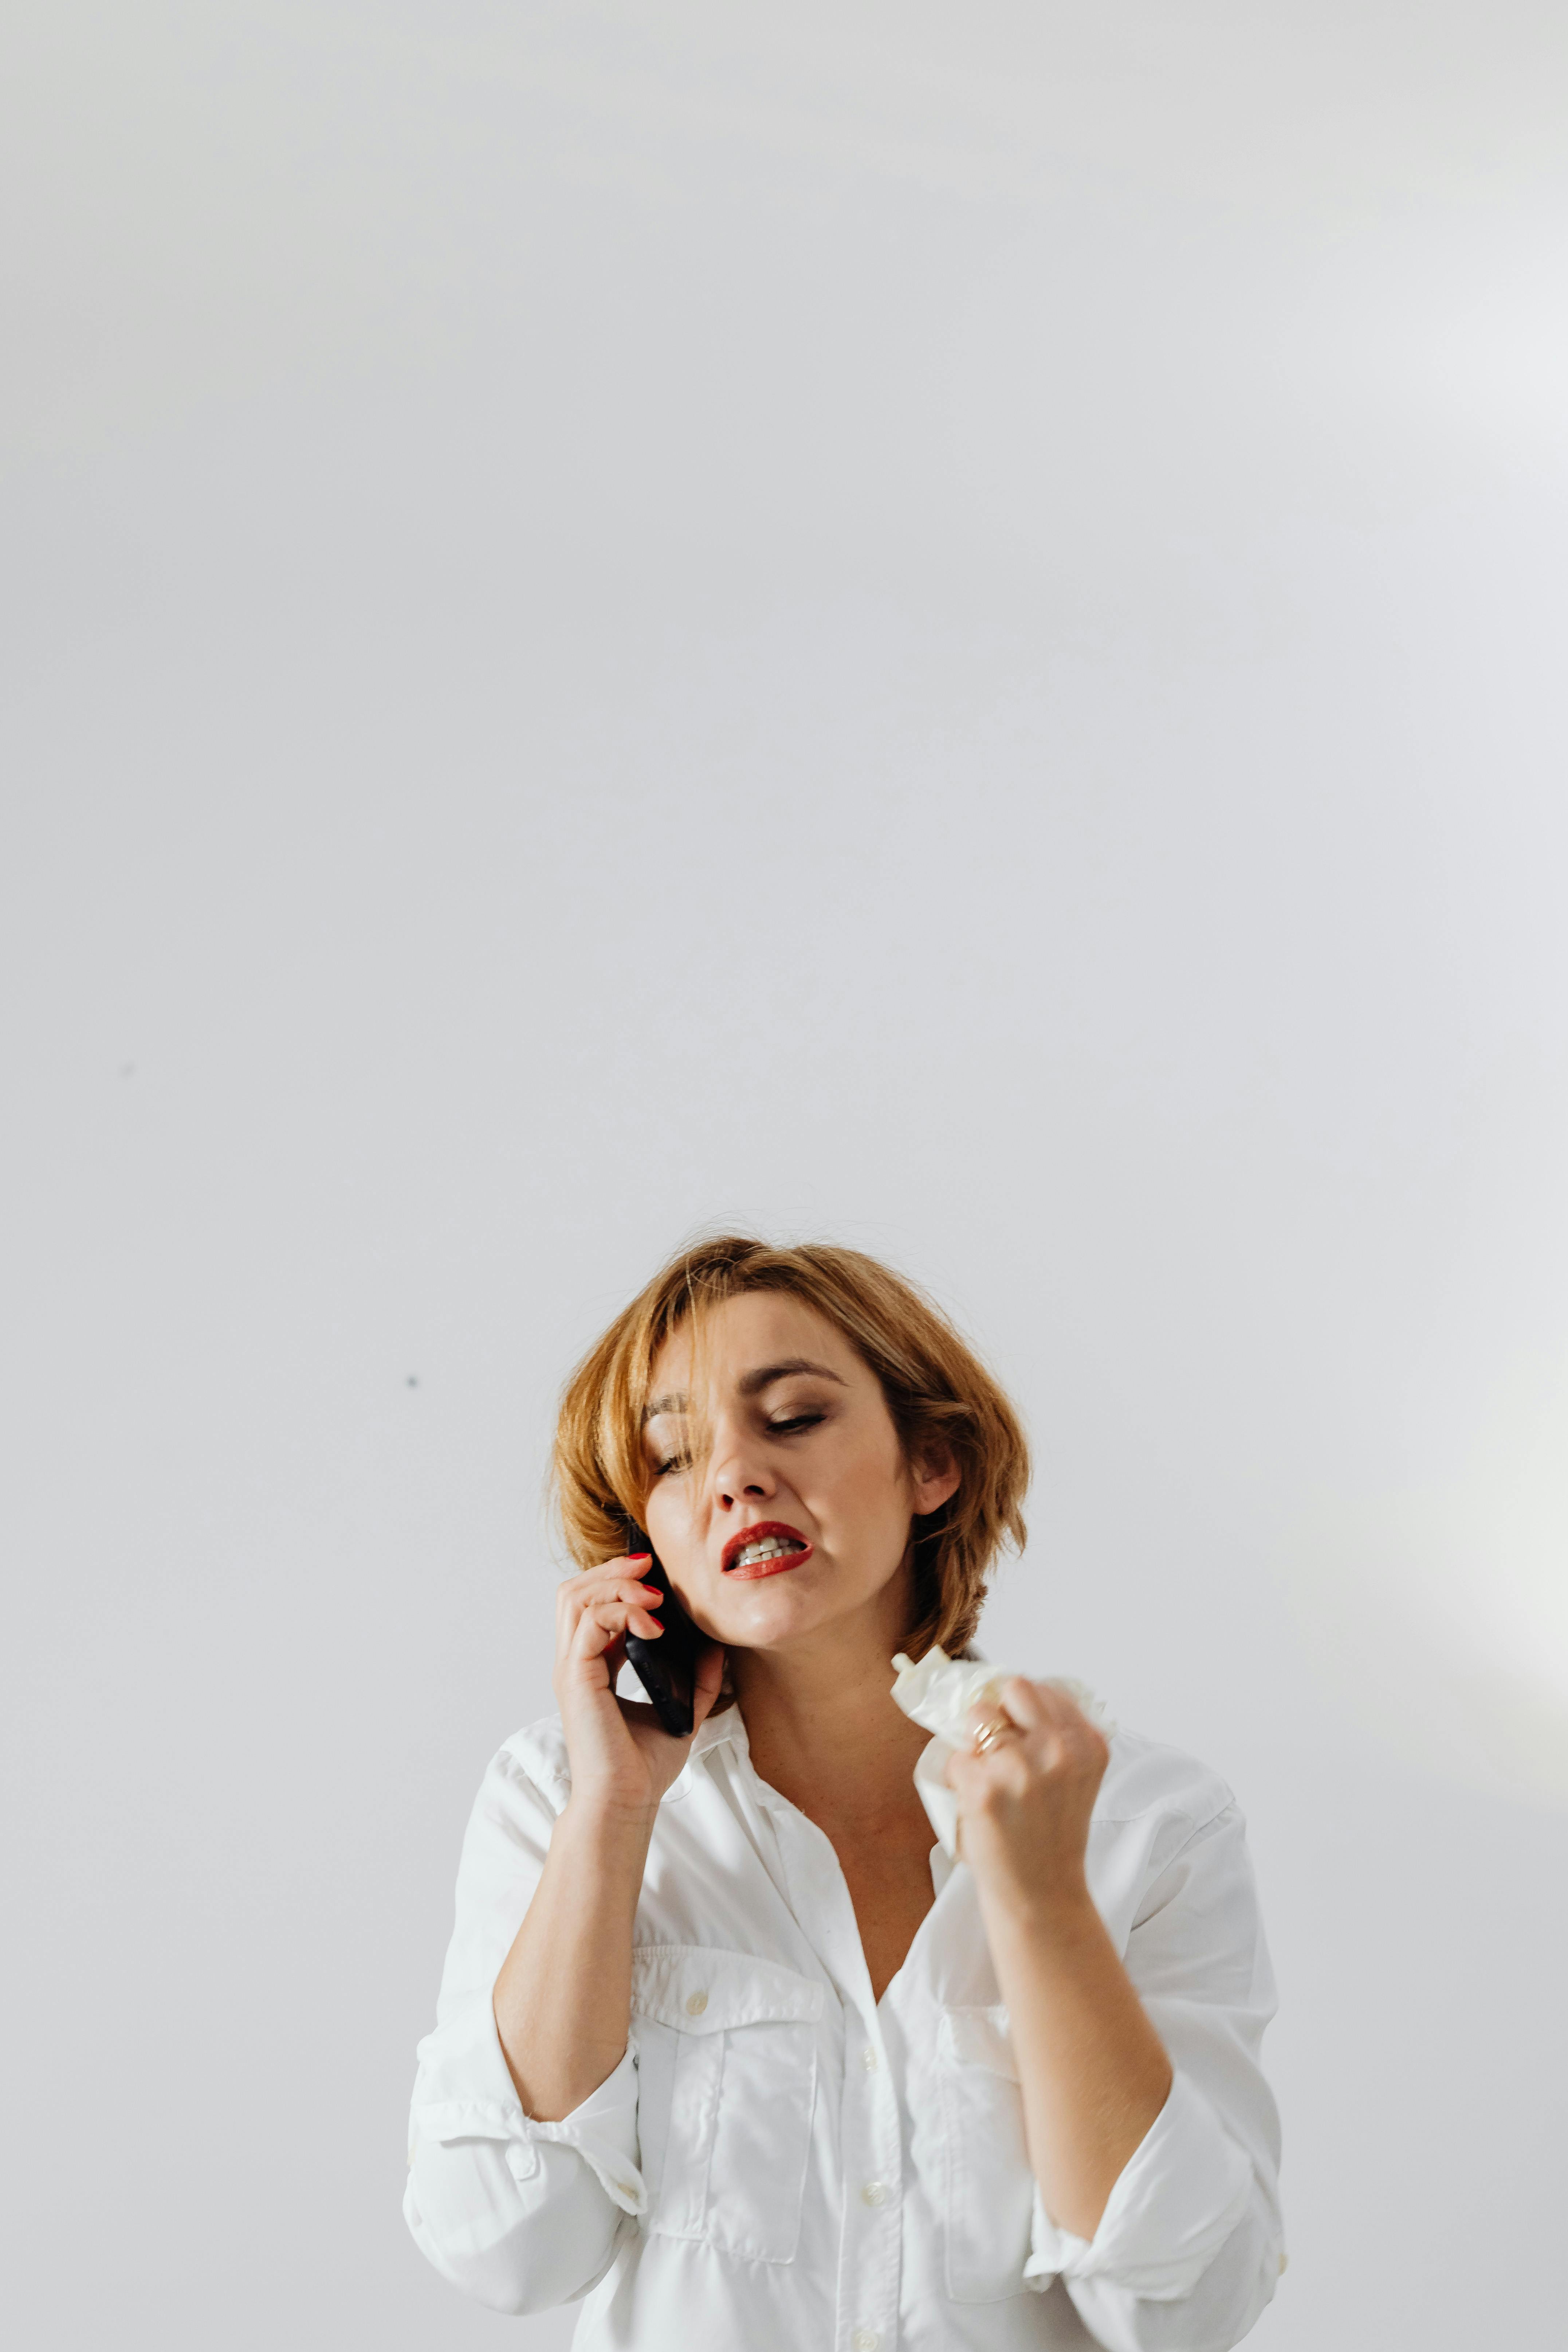 Eine aufgebrachte und wütende Frau hält ein Taschentuch in der Hand, während sie telefoniert | Quelle: Pexels